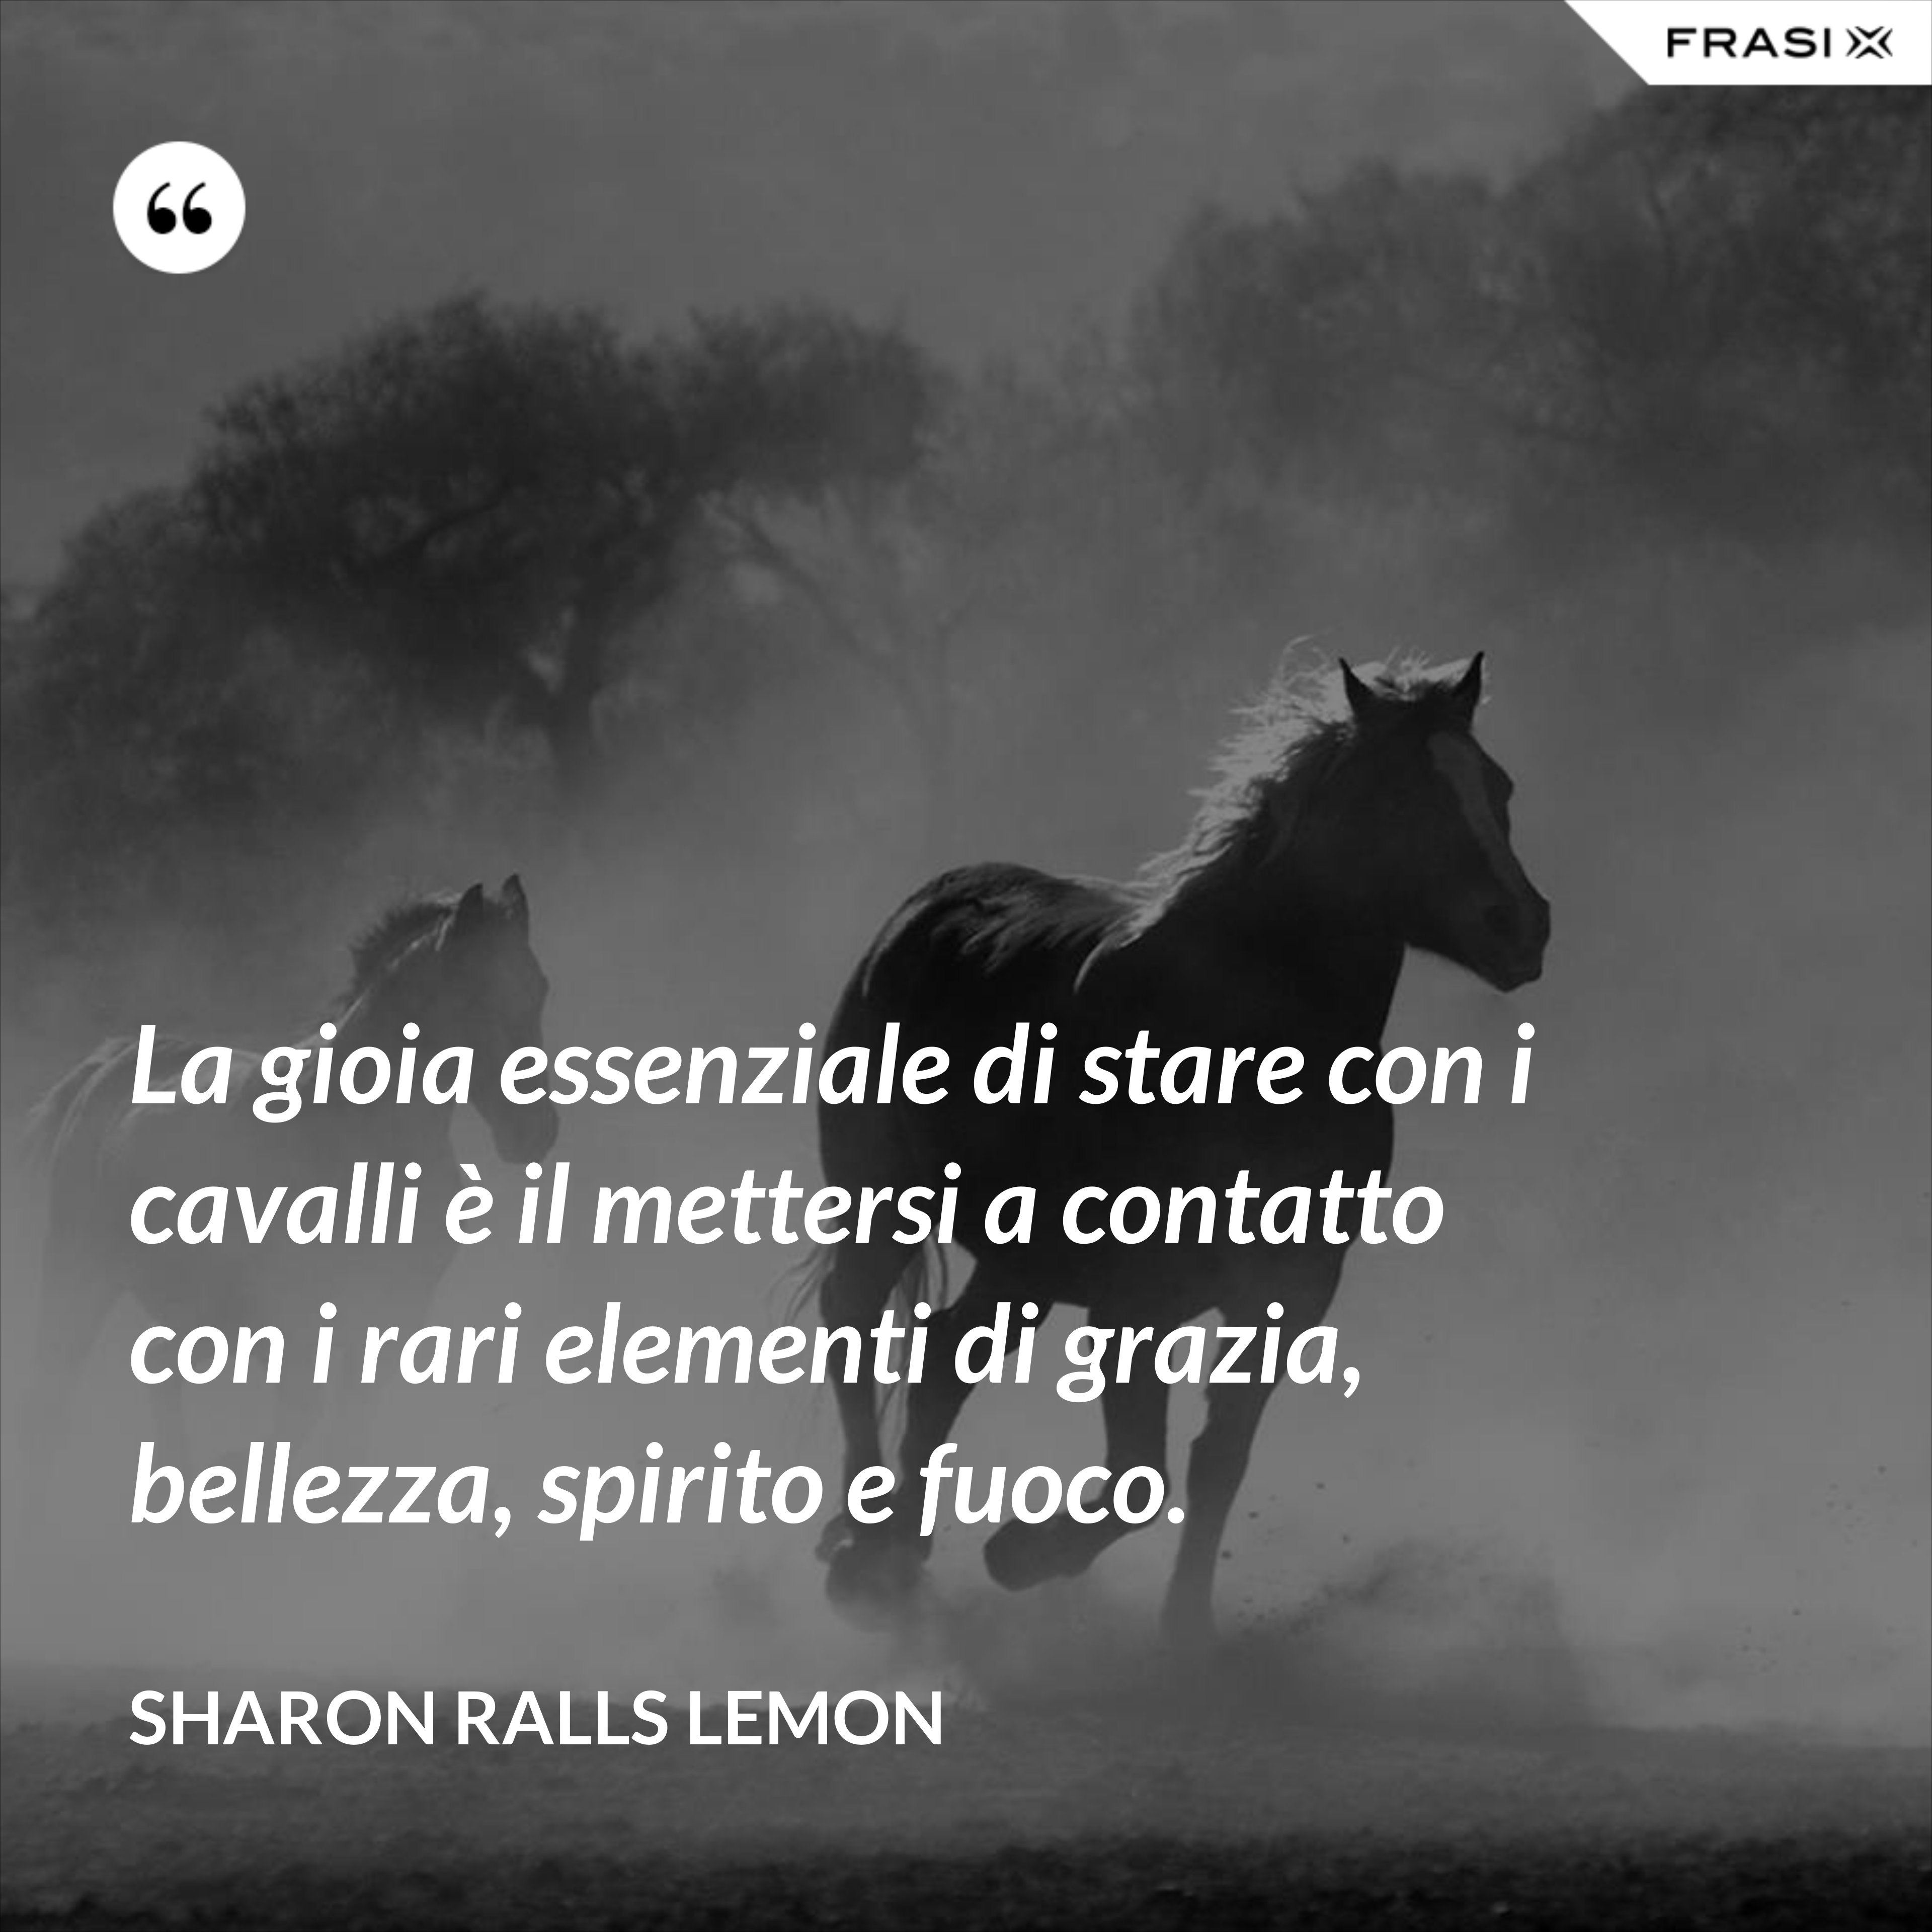 La gioia essenziale di stare con i cavalli è il mettersi a contatto con i rari elementi di grazia, bellezza, spirito e fuoco. - Sharon Ralls Lemon